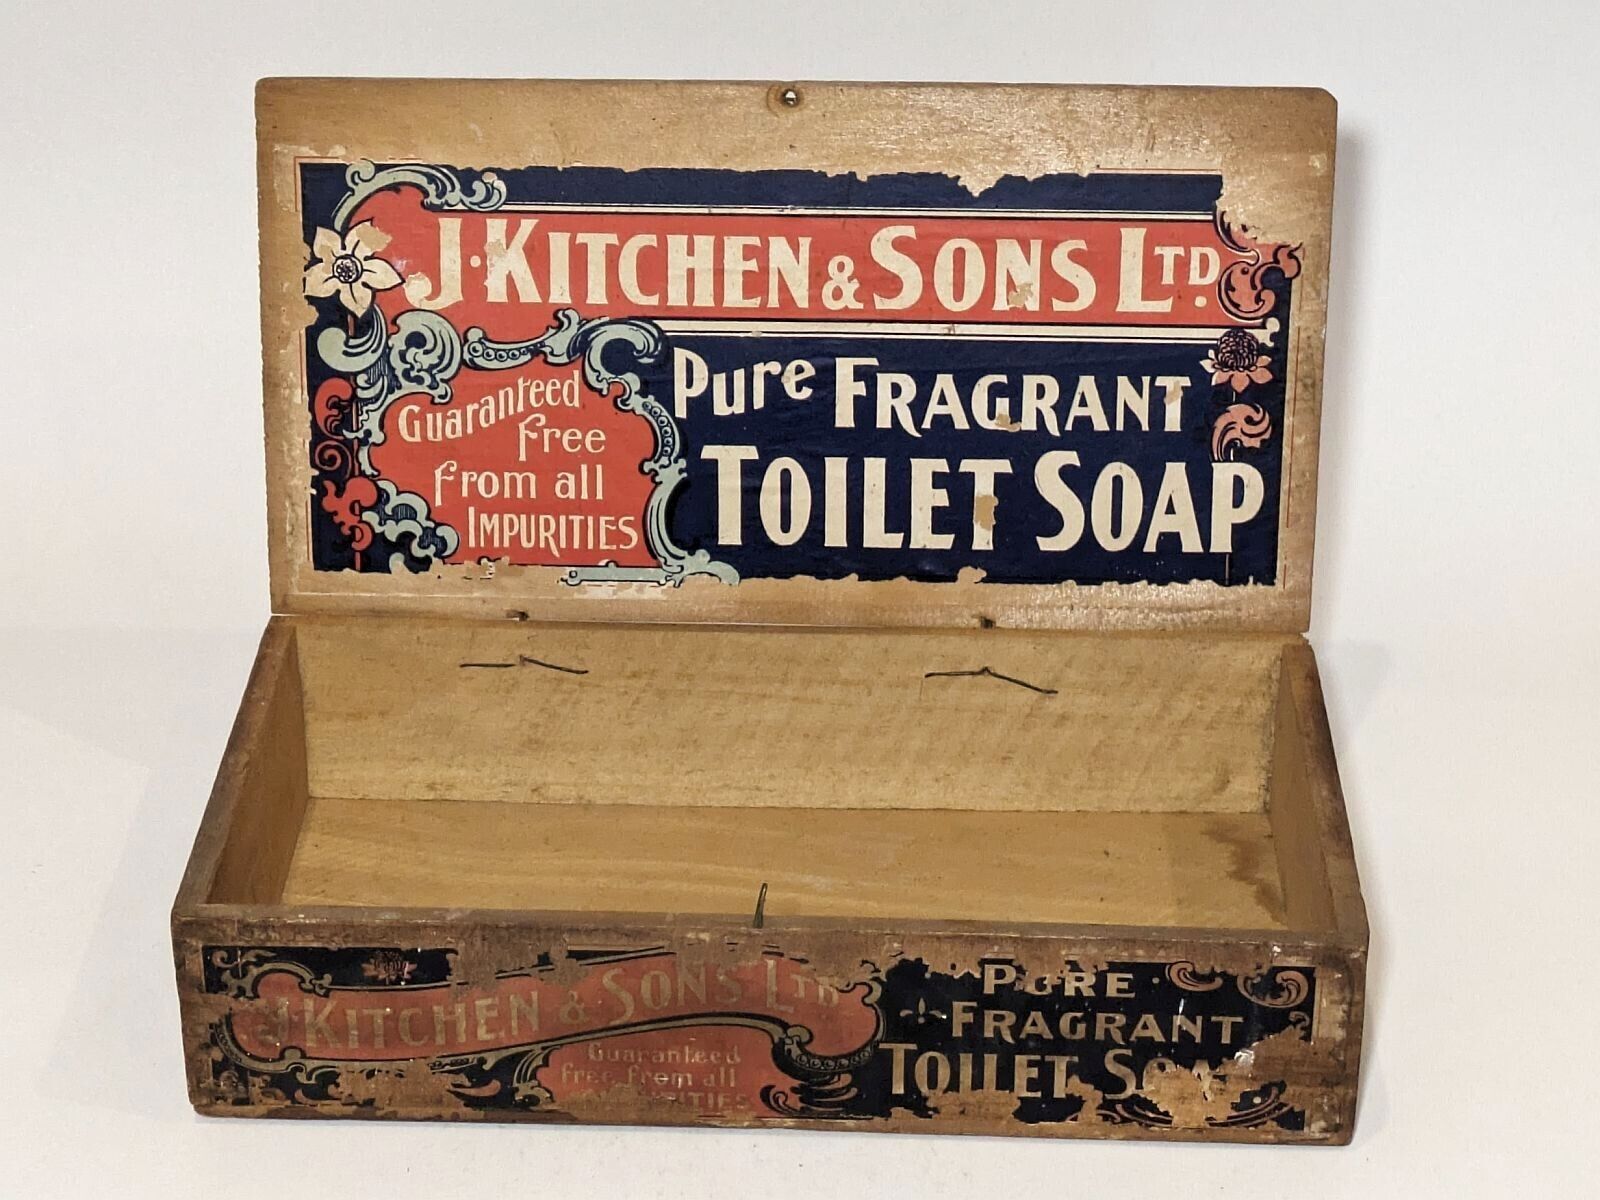 J Kitchen & Sons Pure Fragrant Toilet Soap Box